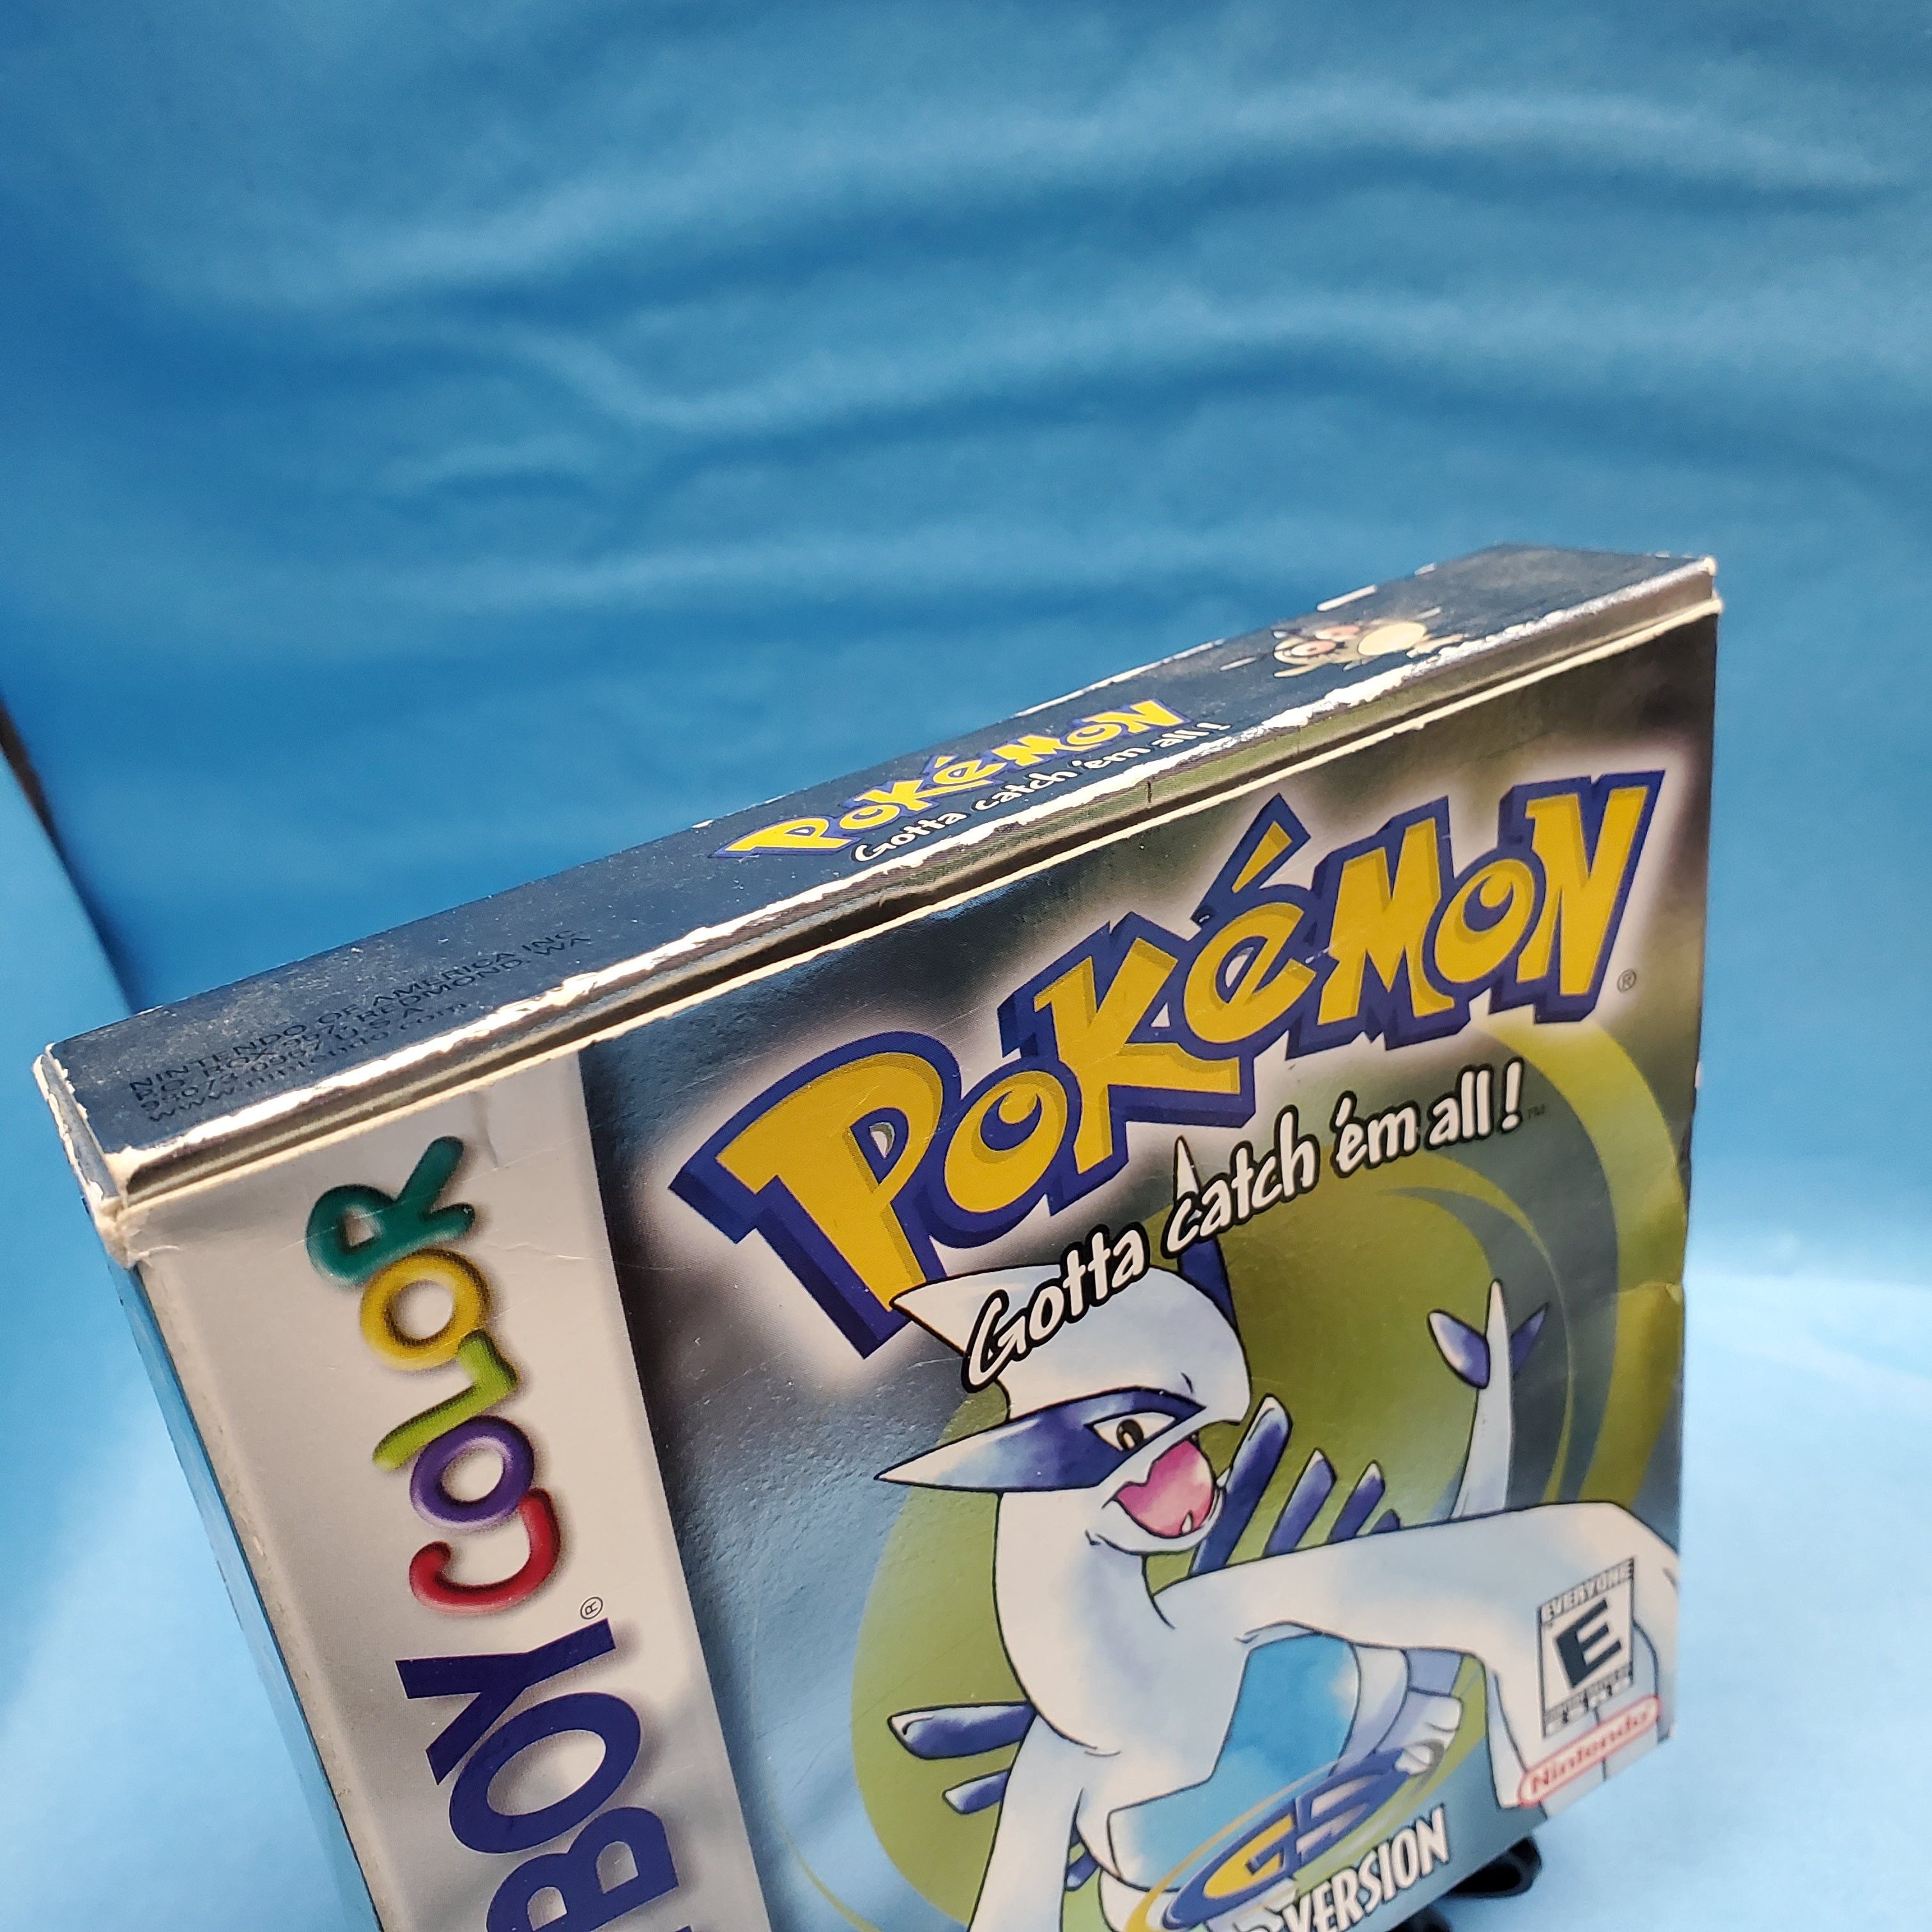 GBC - Pokemon Silver (Complete in Box)